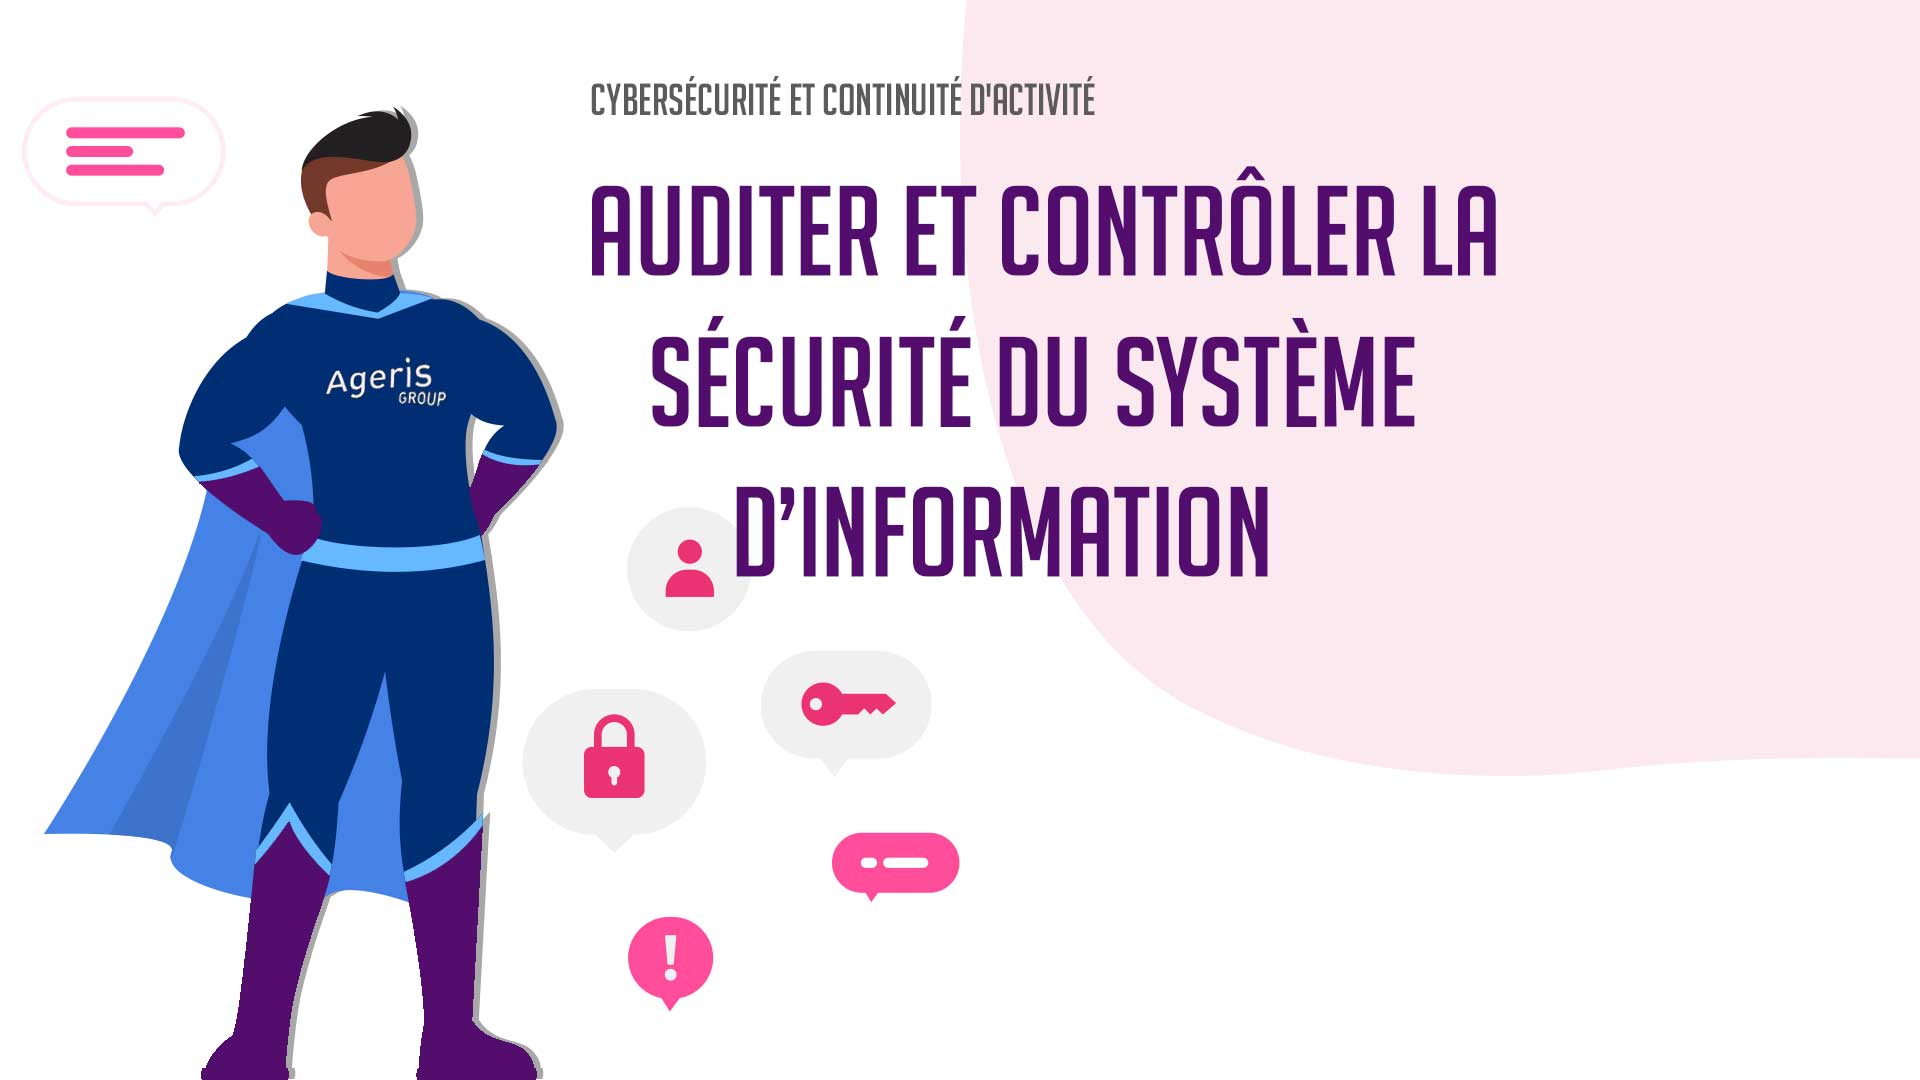 Auditer et contrôler la sécurité du SI (Système d’Information)